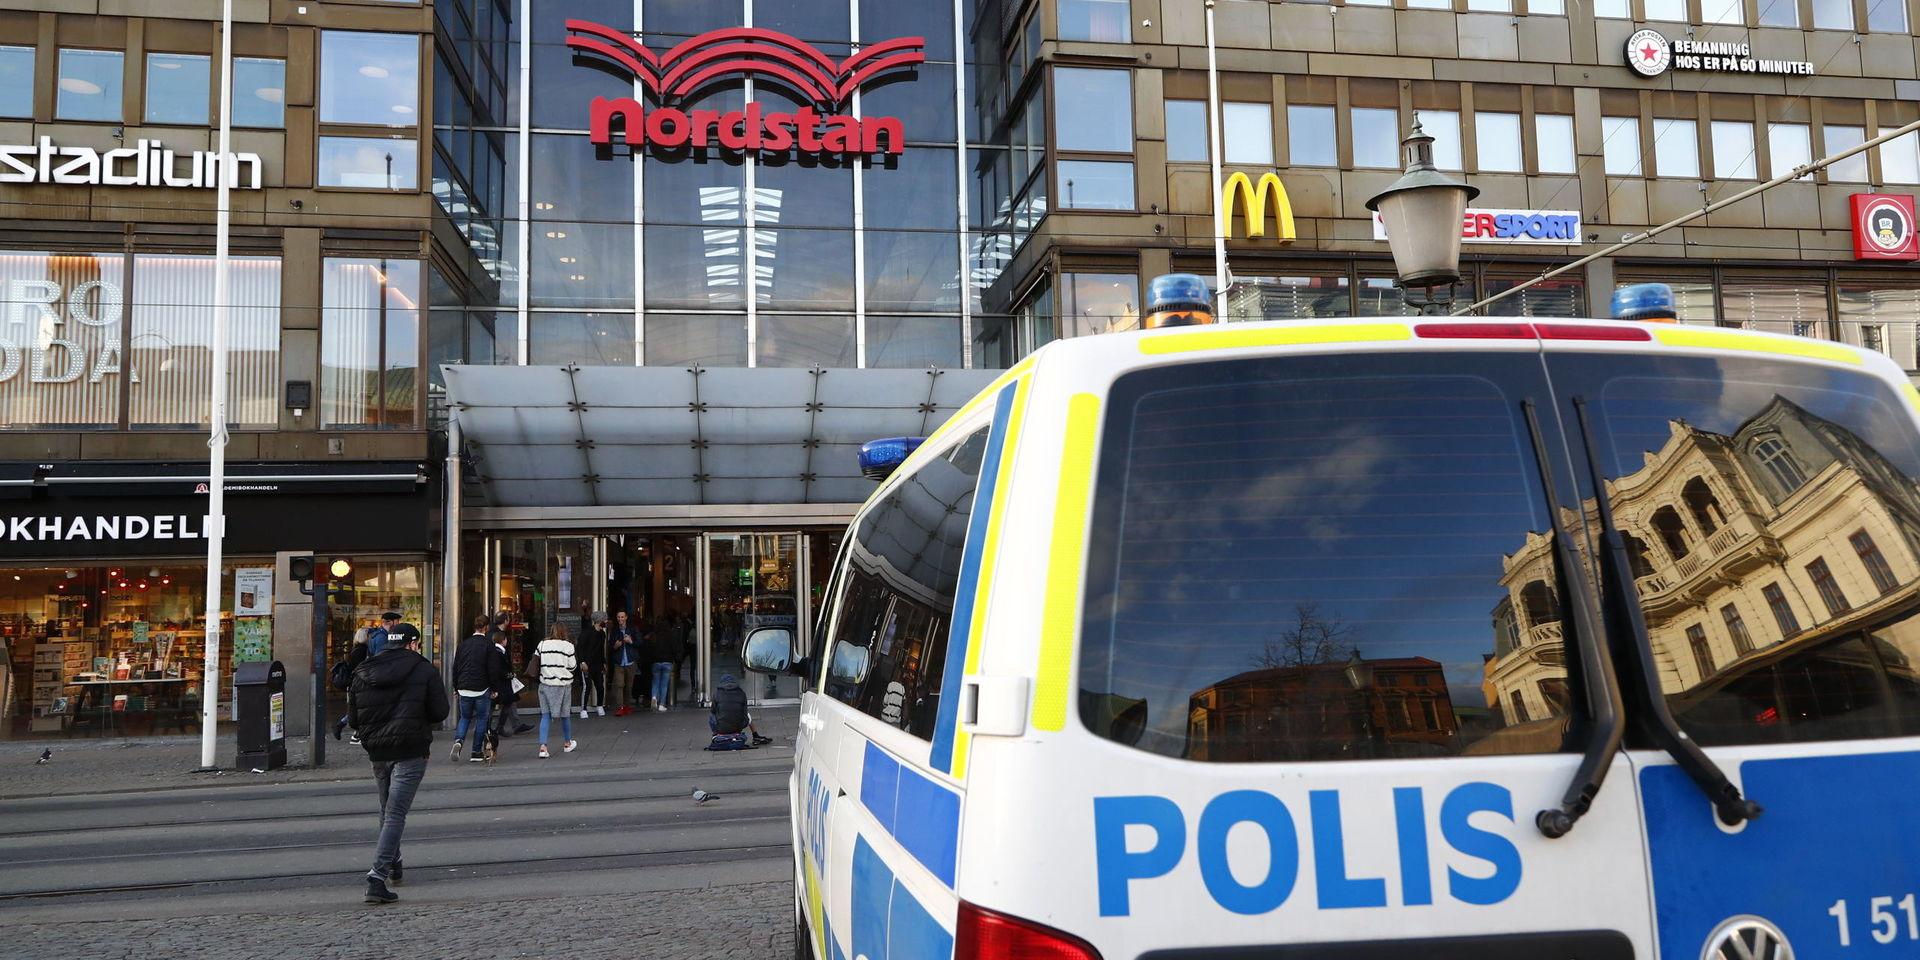 Knivbråket i Nordstan i Göteborg i somras ledde till att en 19-årig man dog. Arkivbild.